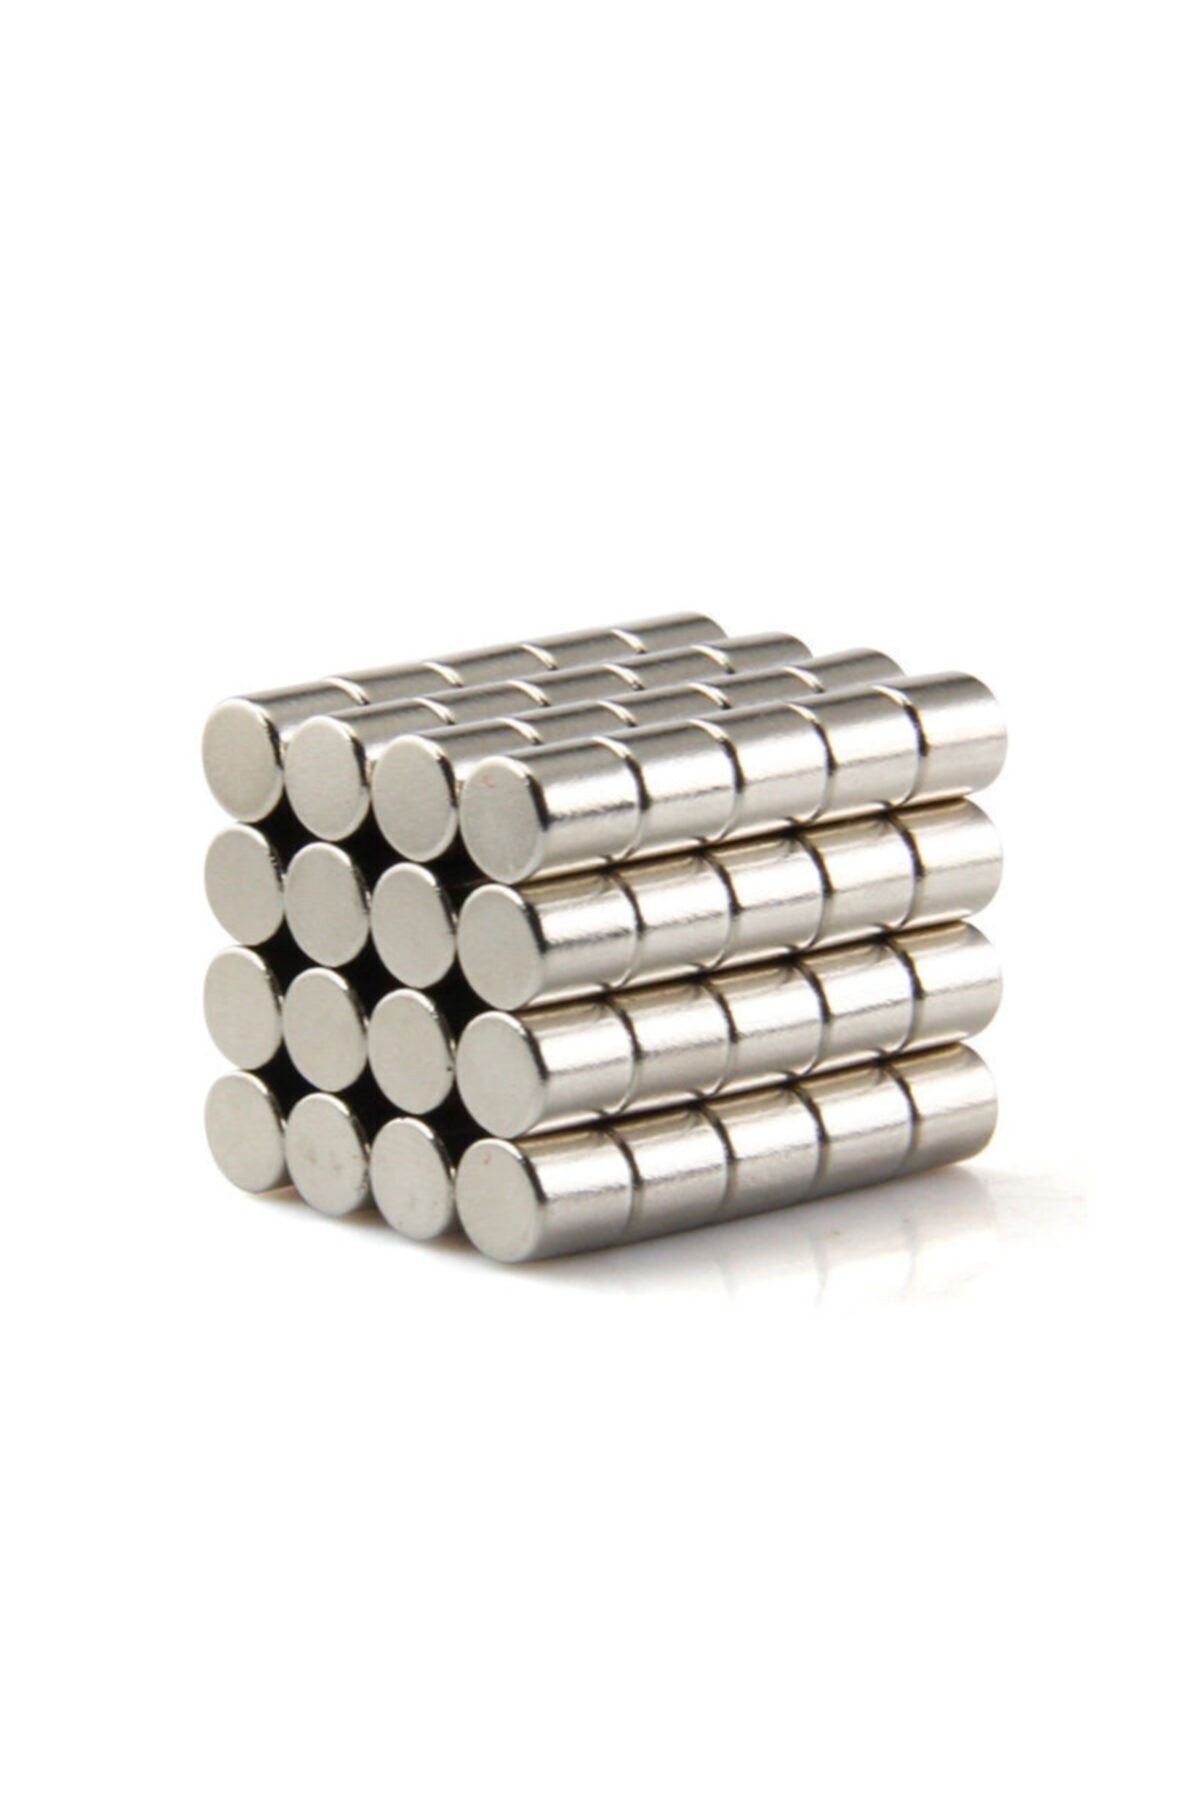 Dünya Magnet 50 Adet Çap 5mm X Kalınlık 5mm Silindir Güçlü Neodyum Mıknatıs